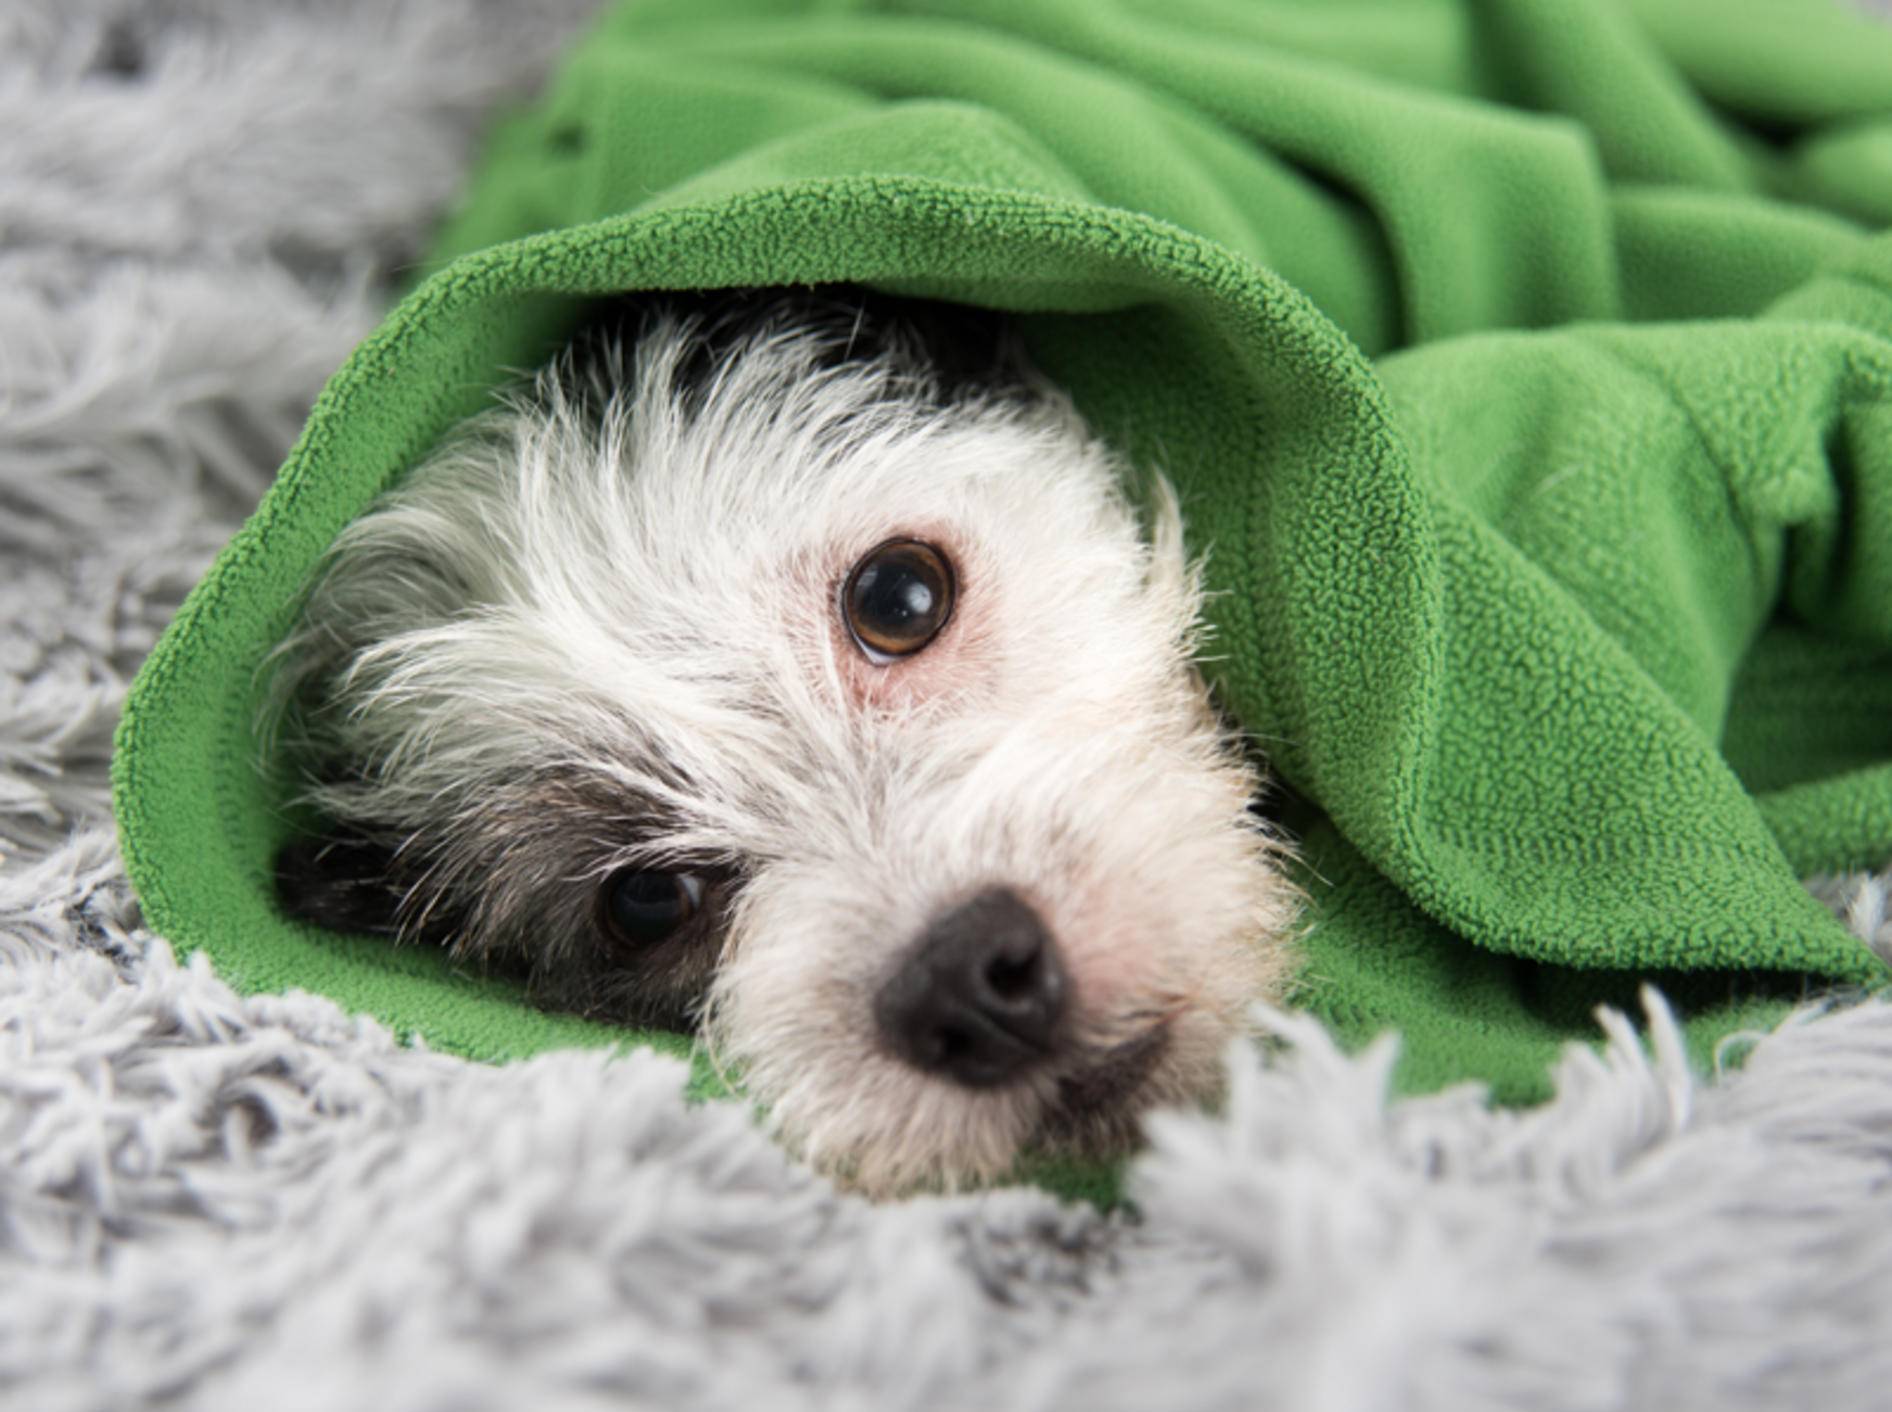 Ist Ihr Hund nur ein wenig schlapp oder handelt es sich um einen Notfall? – Shutterstock / Anna Hoychuk